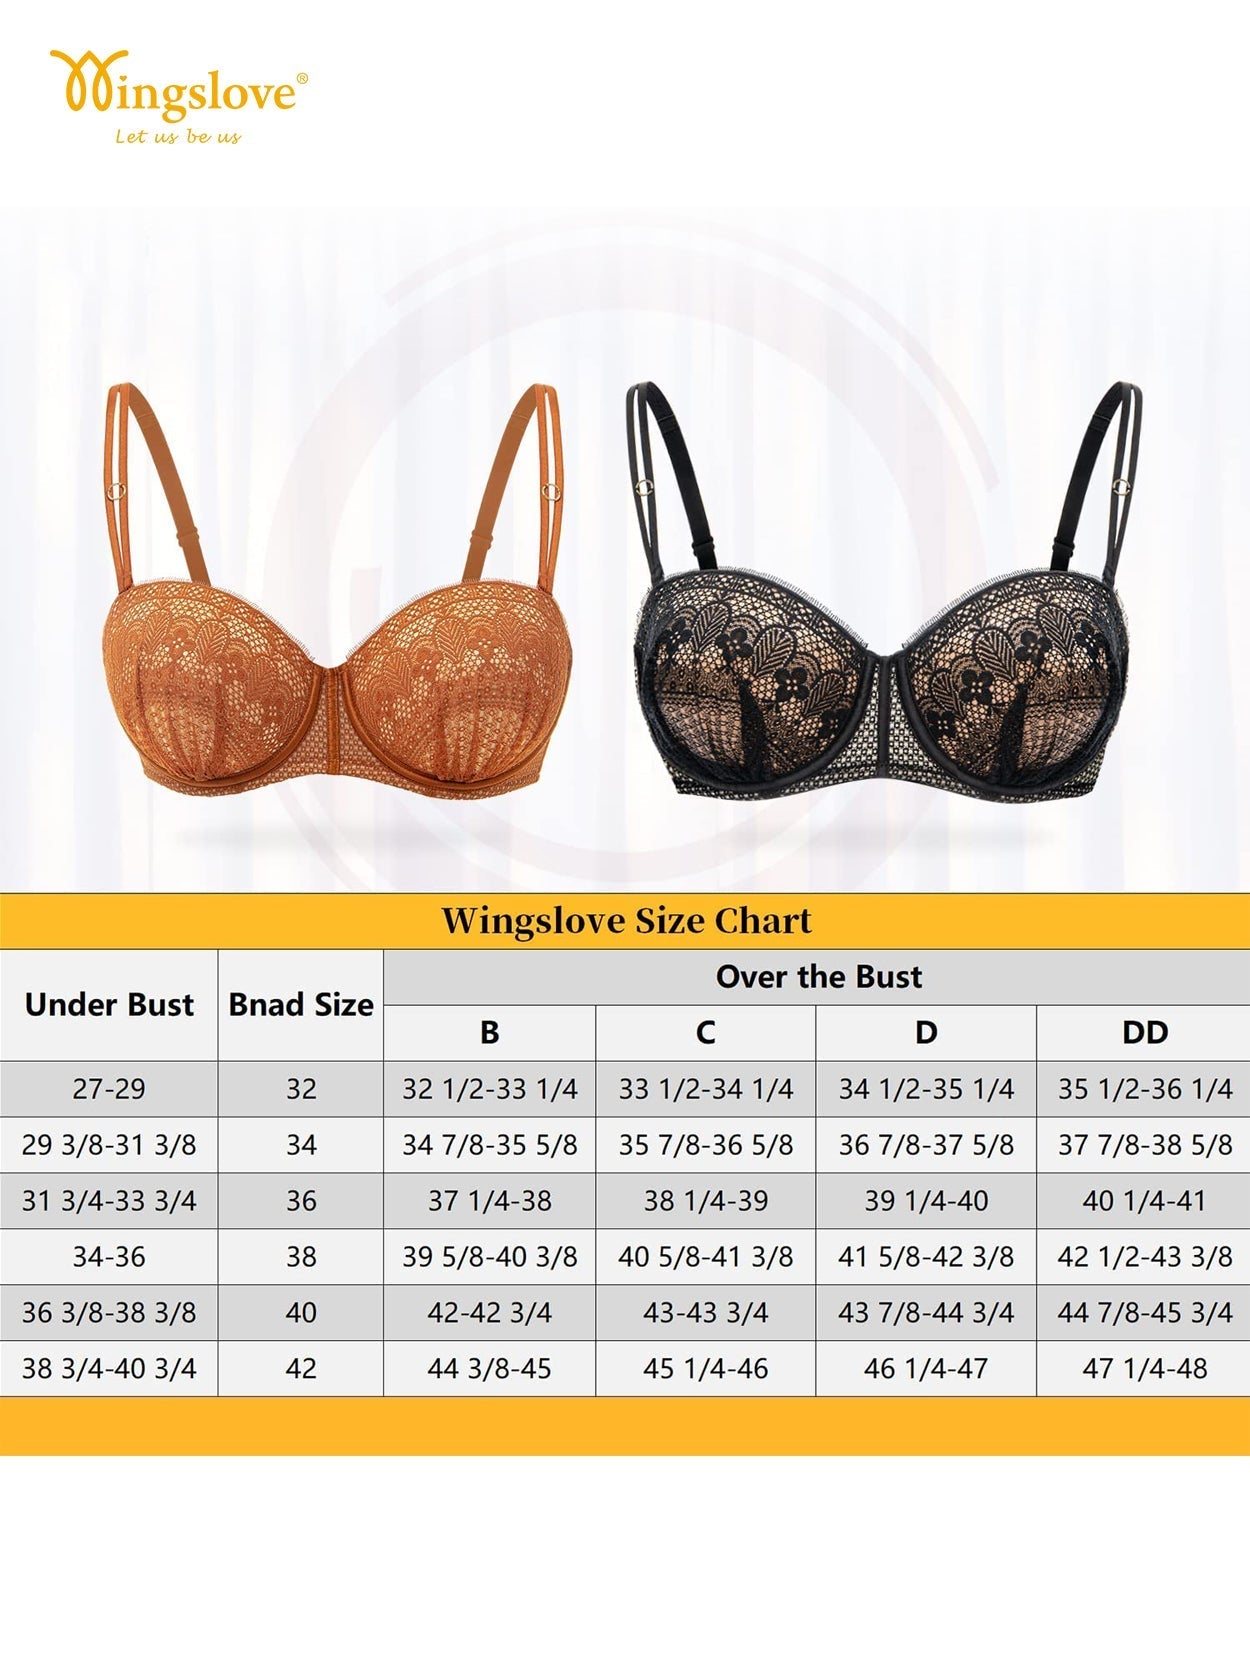 Women's padded blaconette bra size 30 32 34 36 38 40 42